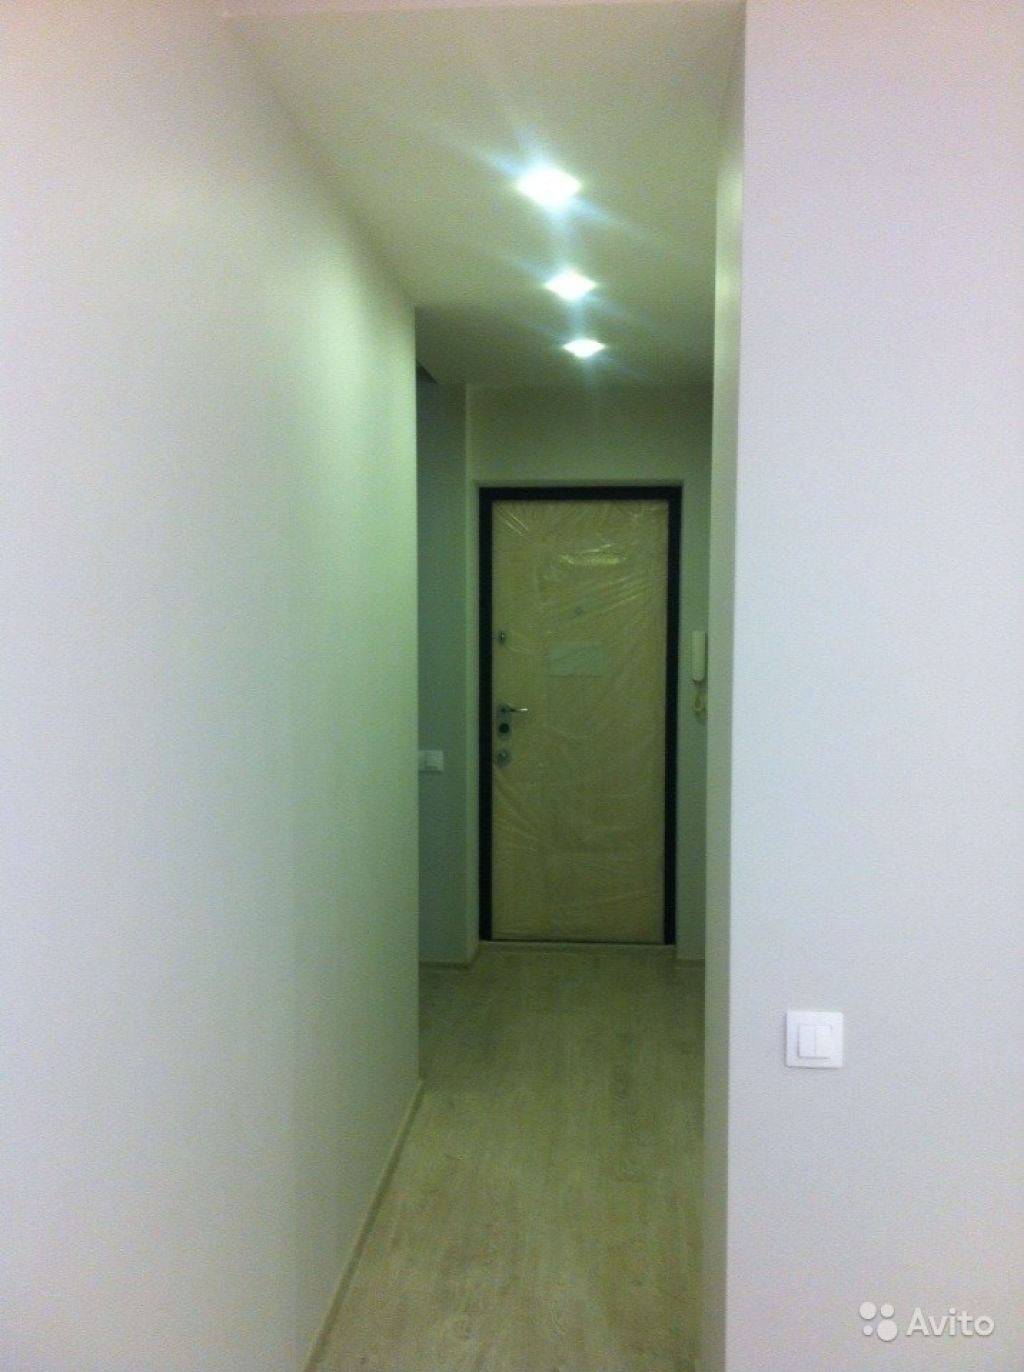 Сдам квартиру 1-к квартира 36 м² на 13 этаже 17-этажного кирпичного дома в Москве. Фото 1